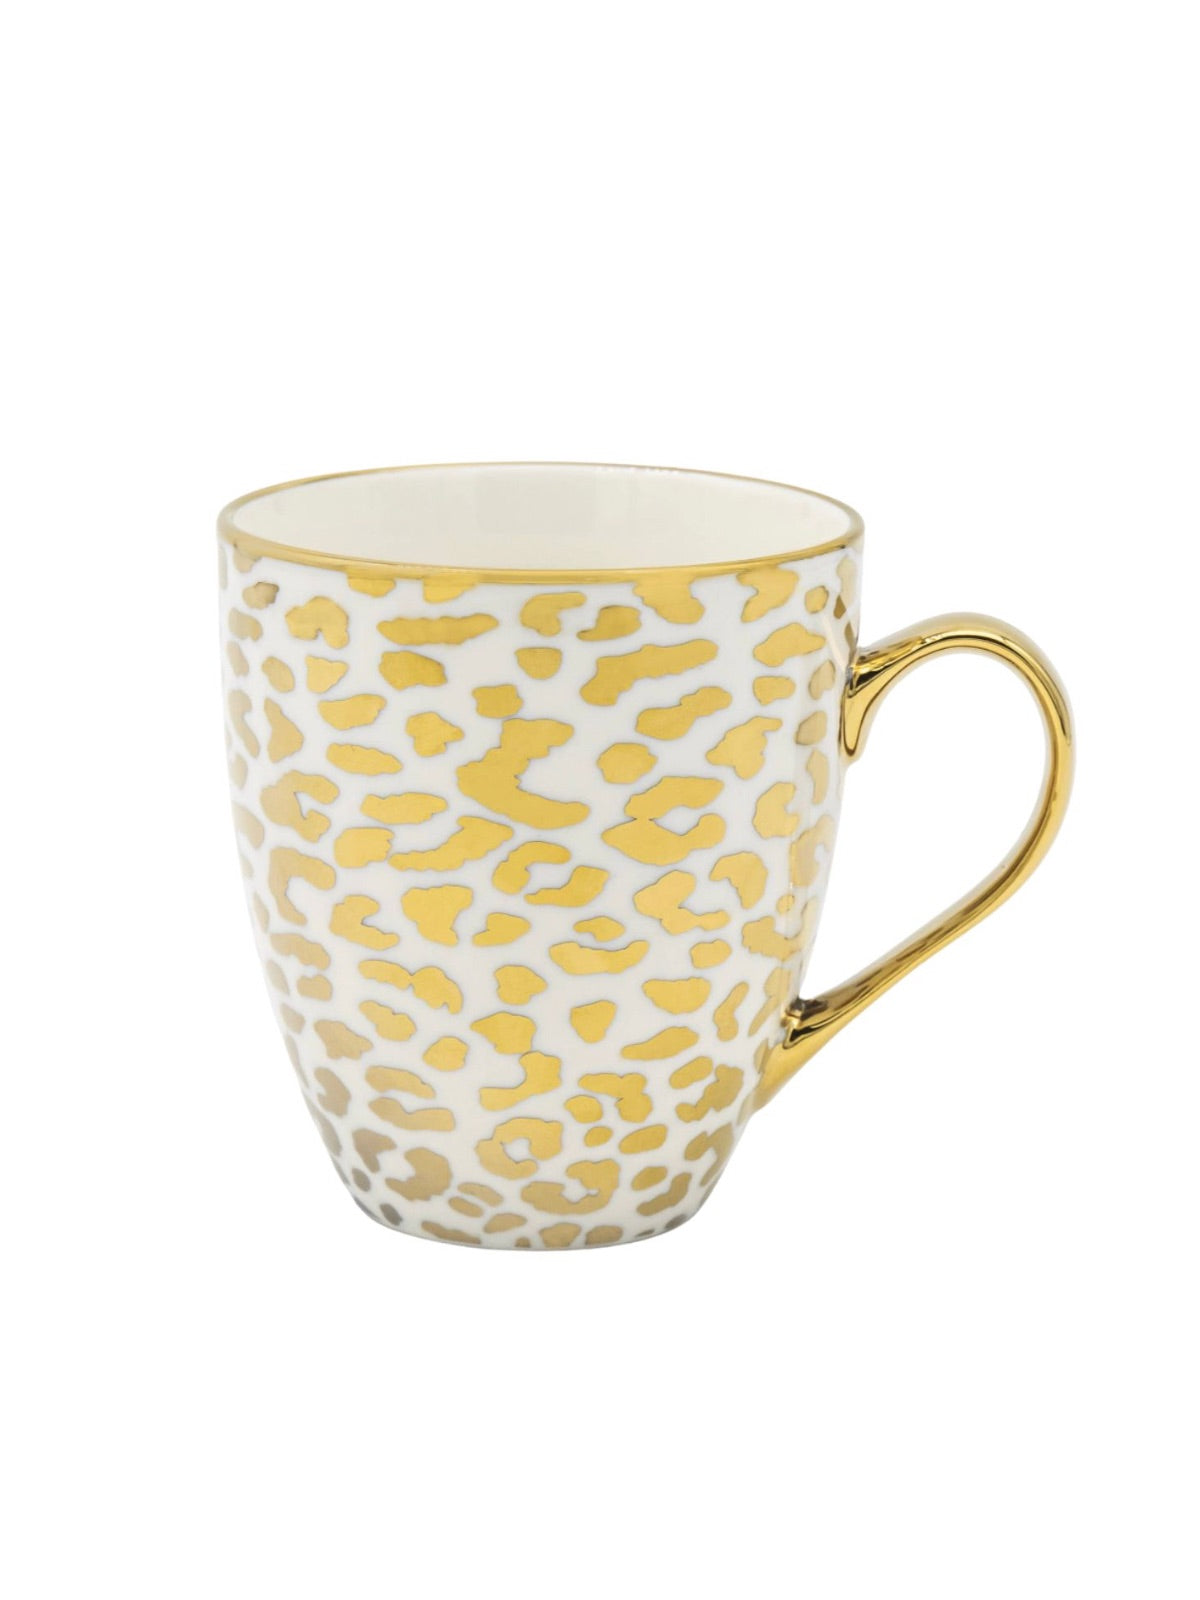 Gold Leopard Print 19oz Porcelain Mugs - Set of 4.